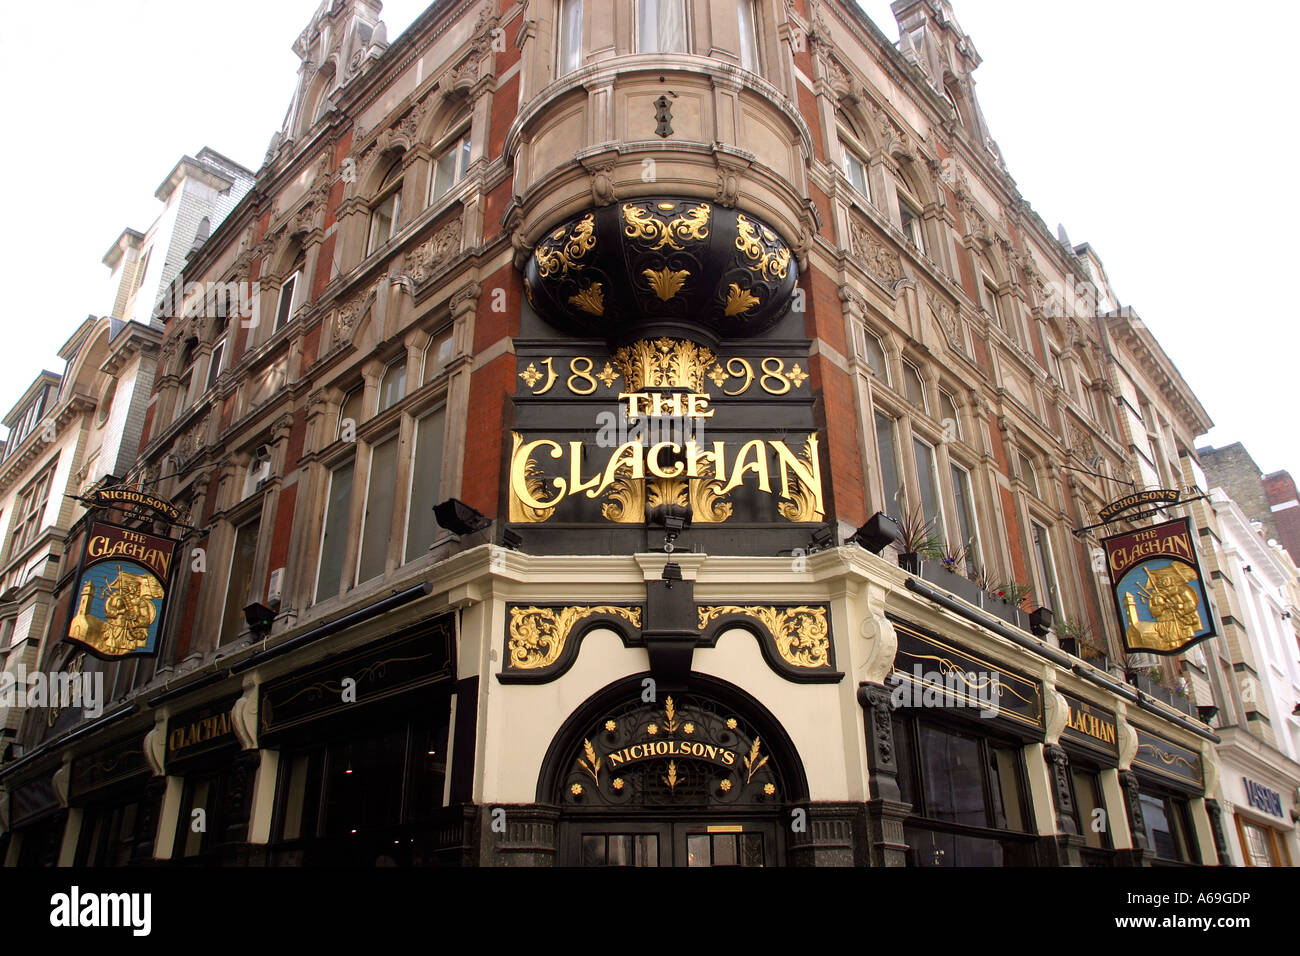 Regno Unito Londra Soho strada regale il pub Claghan ornano la facciata vittoriana 1898 Foto Stock